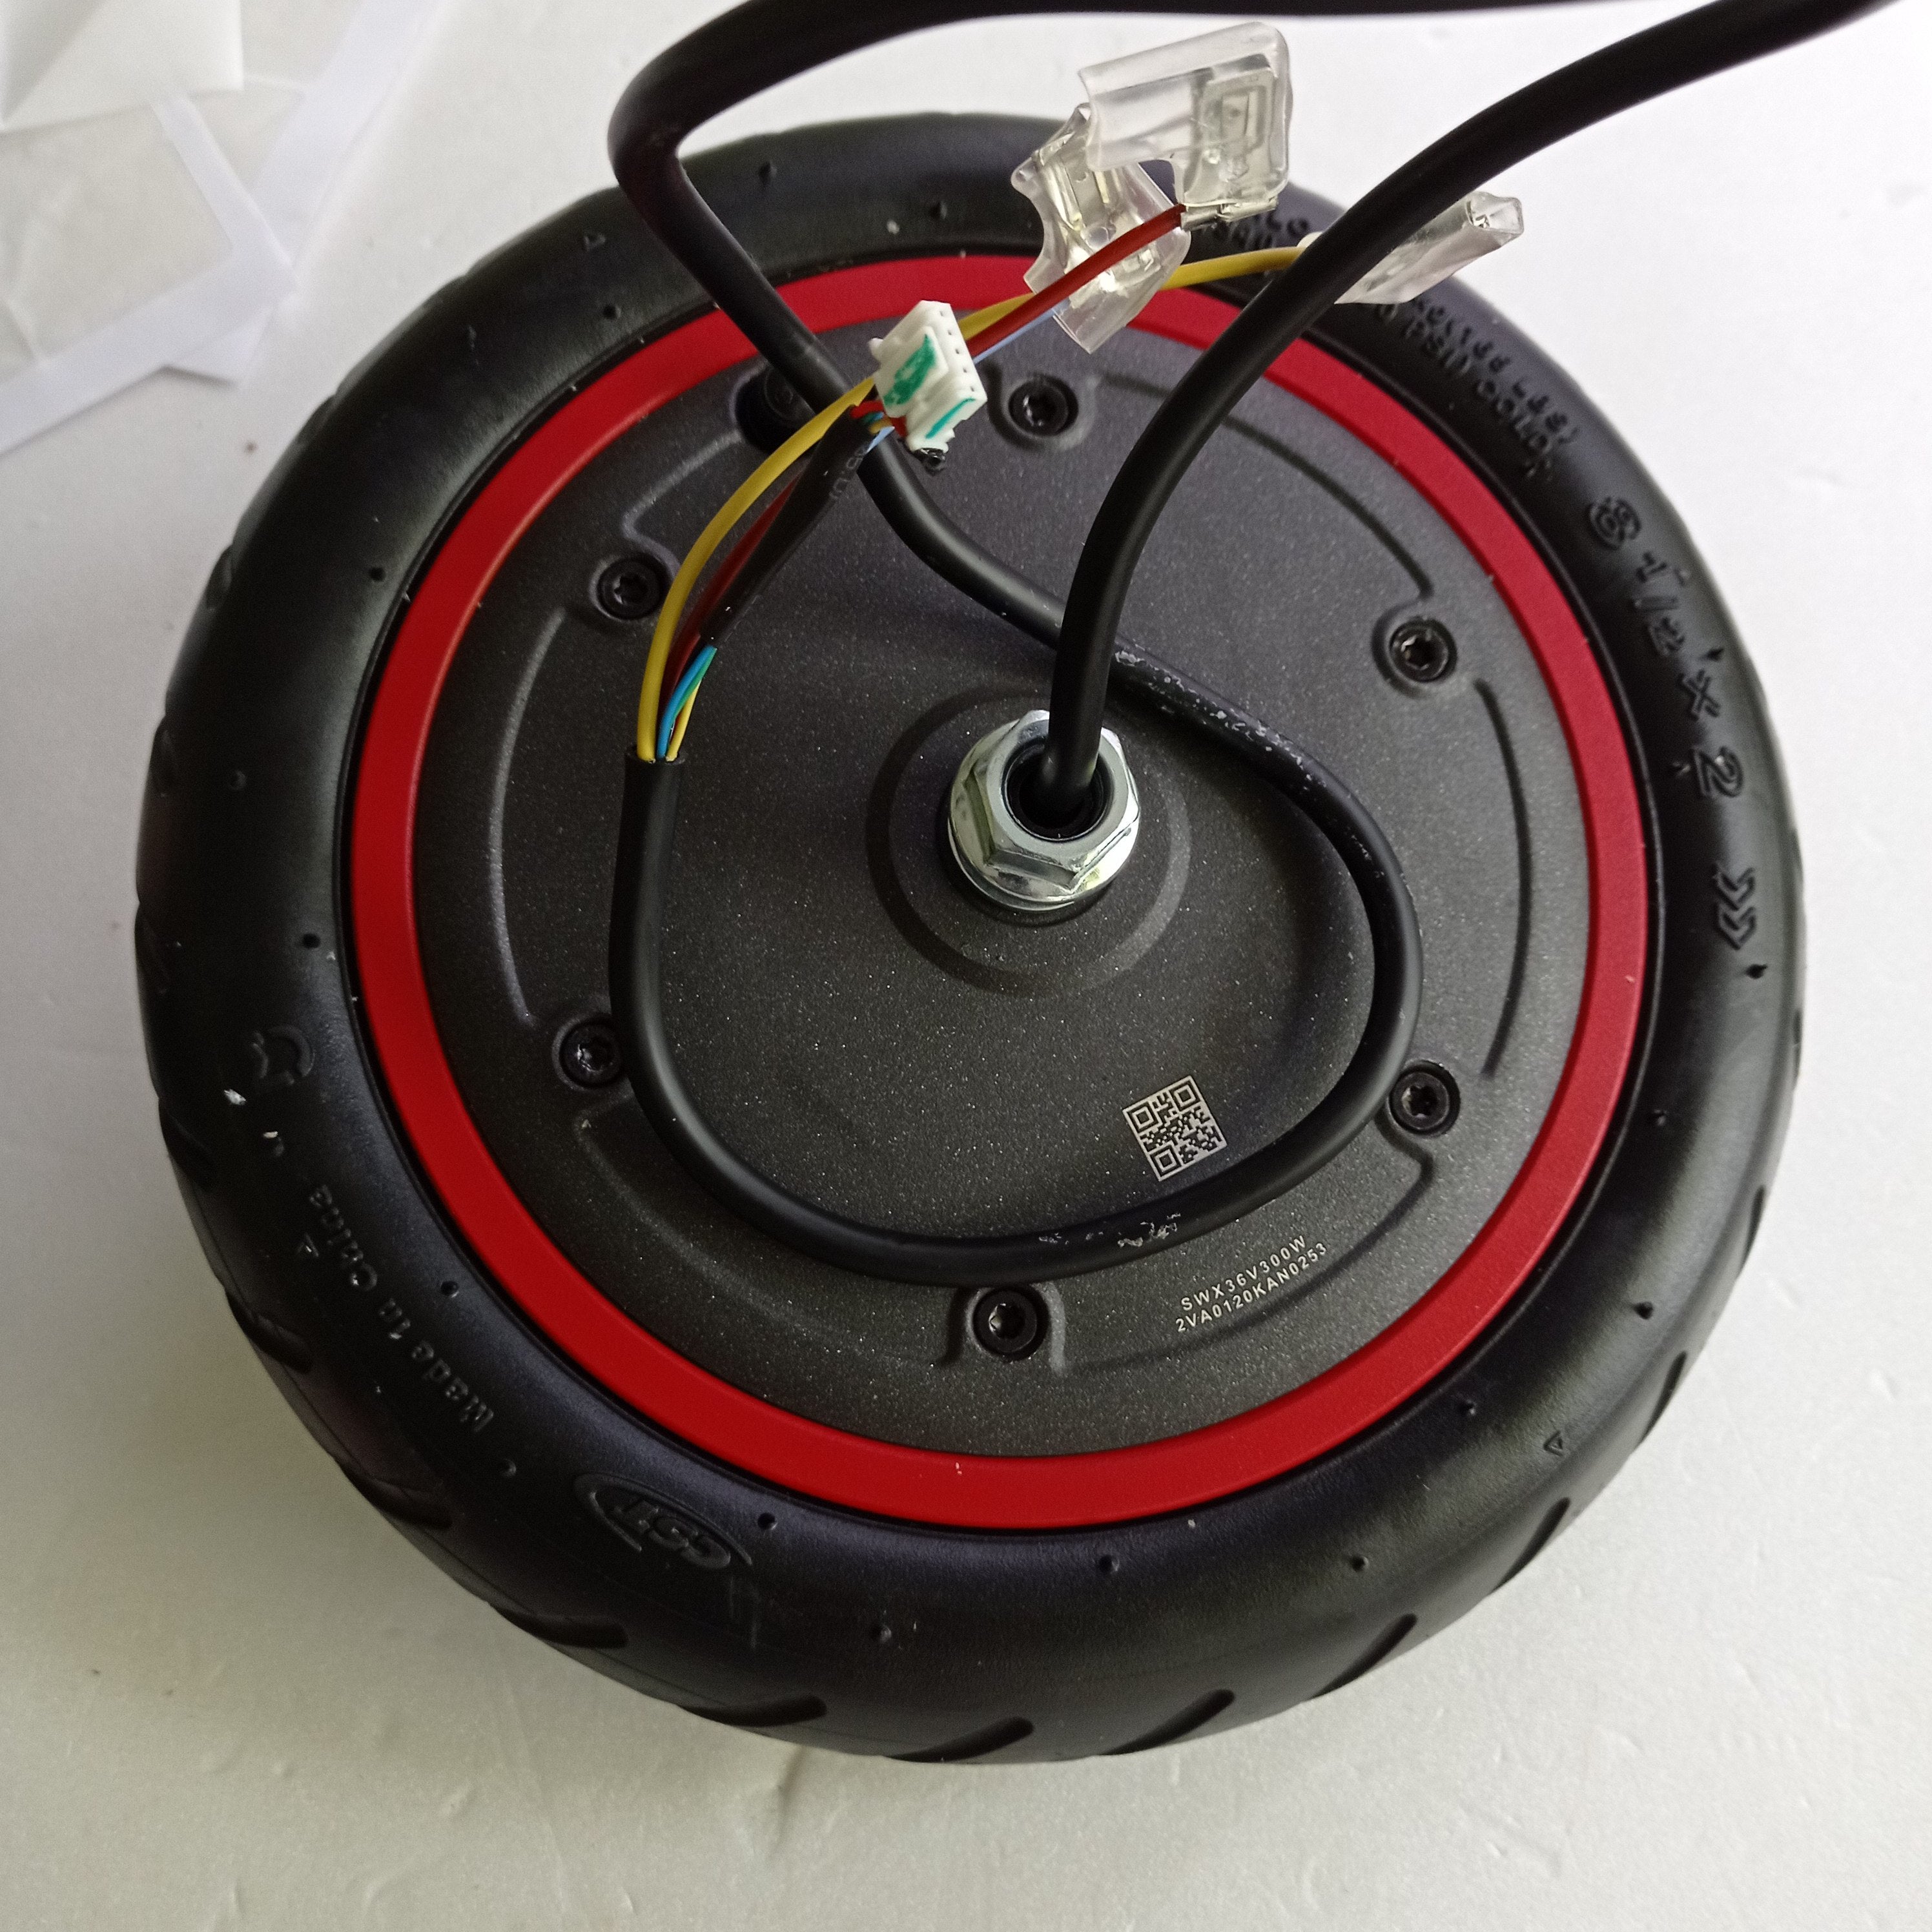 Tube / Chambre à air MONORIM pour trottinette électrique roue avant/arrière  8,5 Zoll noir Vanne 0° (vanne droite) Note 1 - réparation parfaite